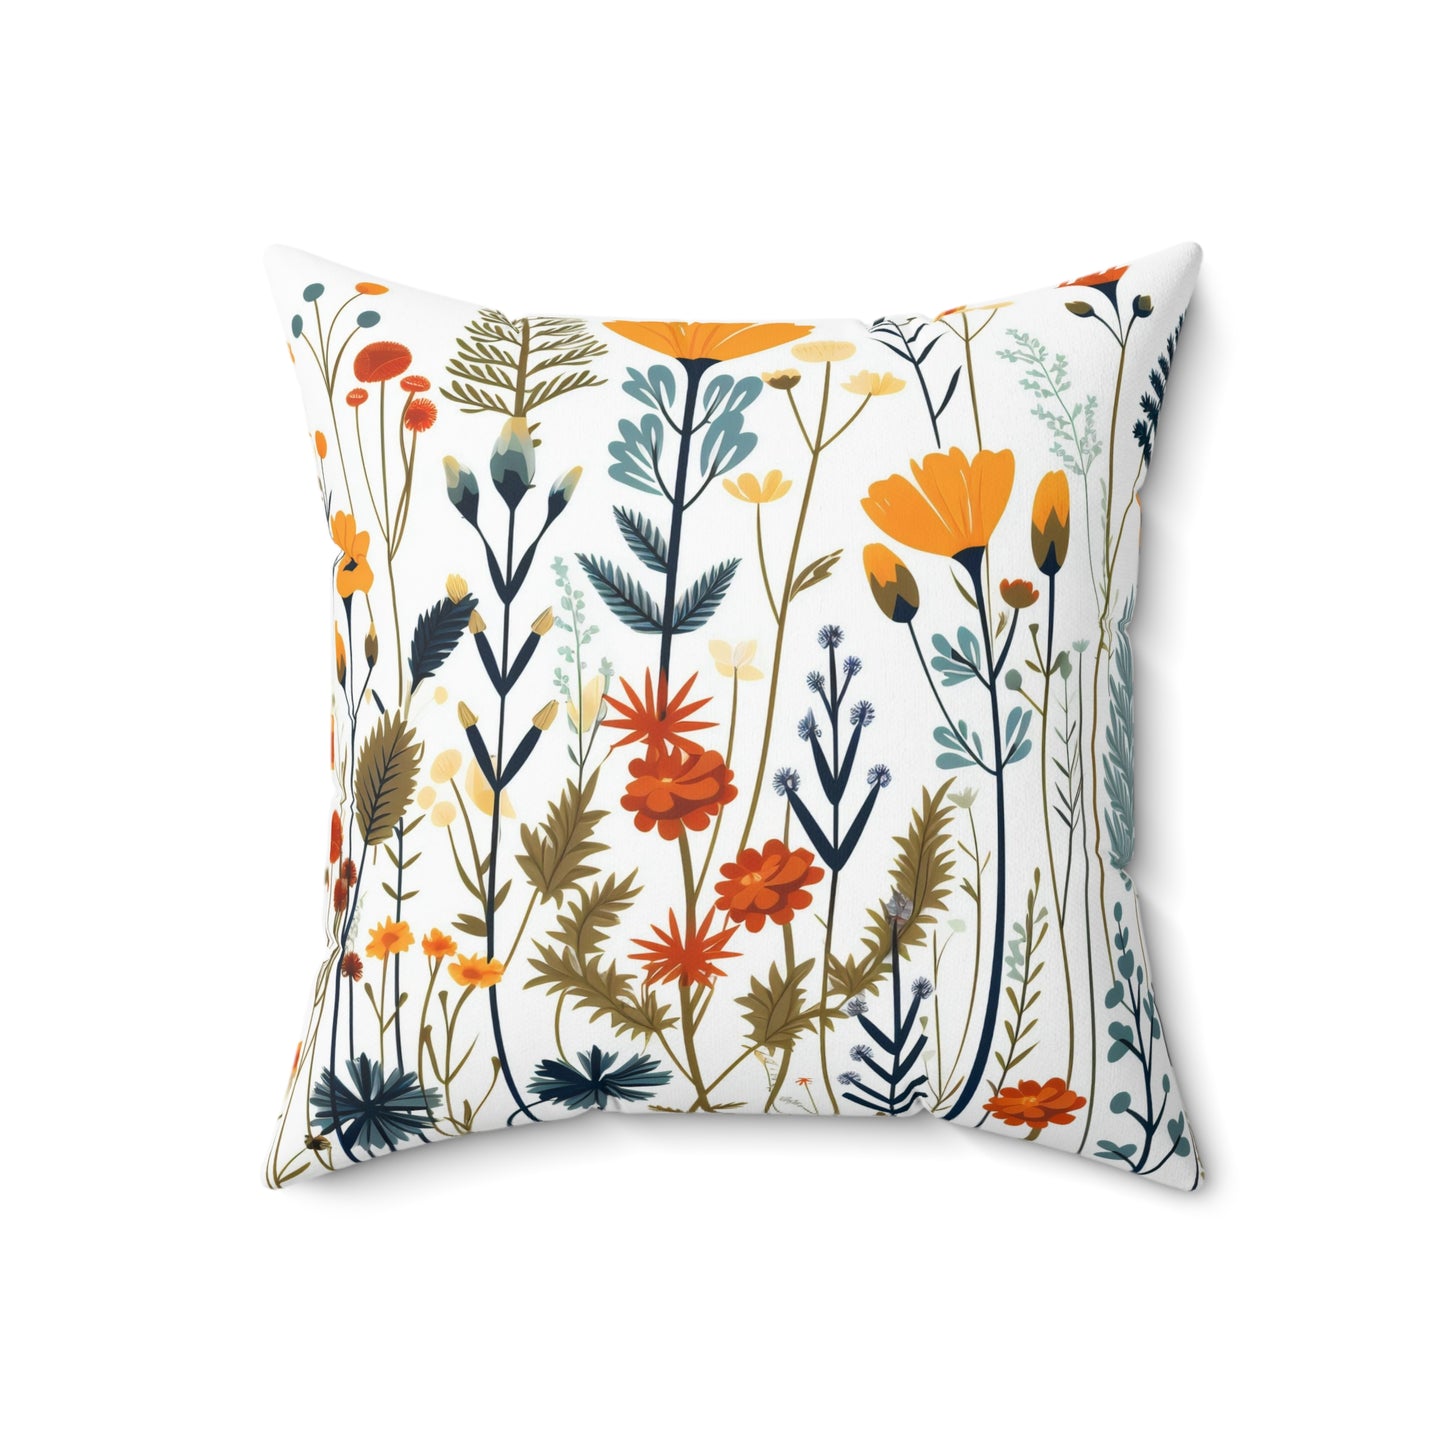 Folk Art Floral Pillow, Folk Art Flowers Cushion, Scandinavian Floral Pillow, Nordic Decorative Pillow, Swedish Pillow, Concealed Zipper